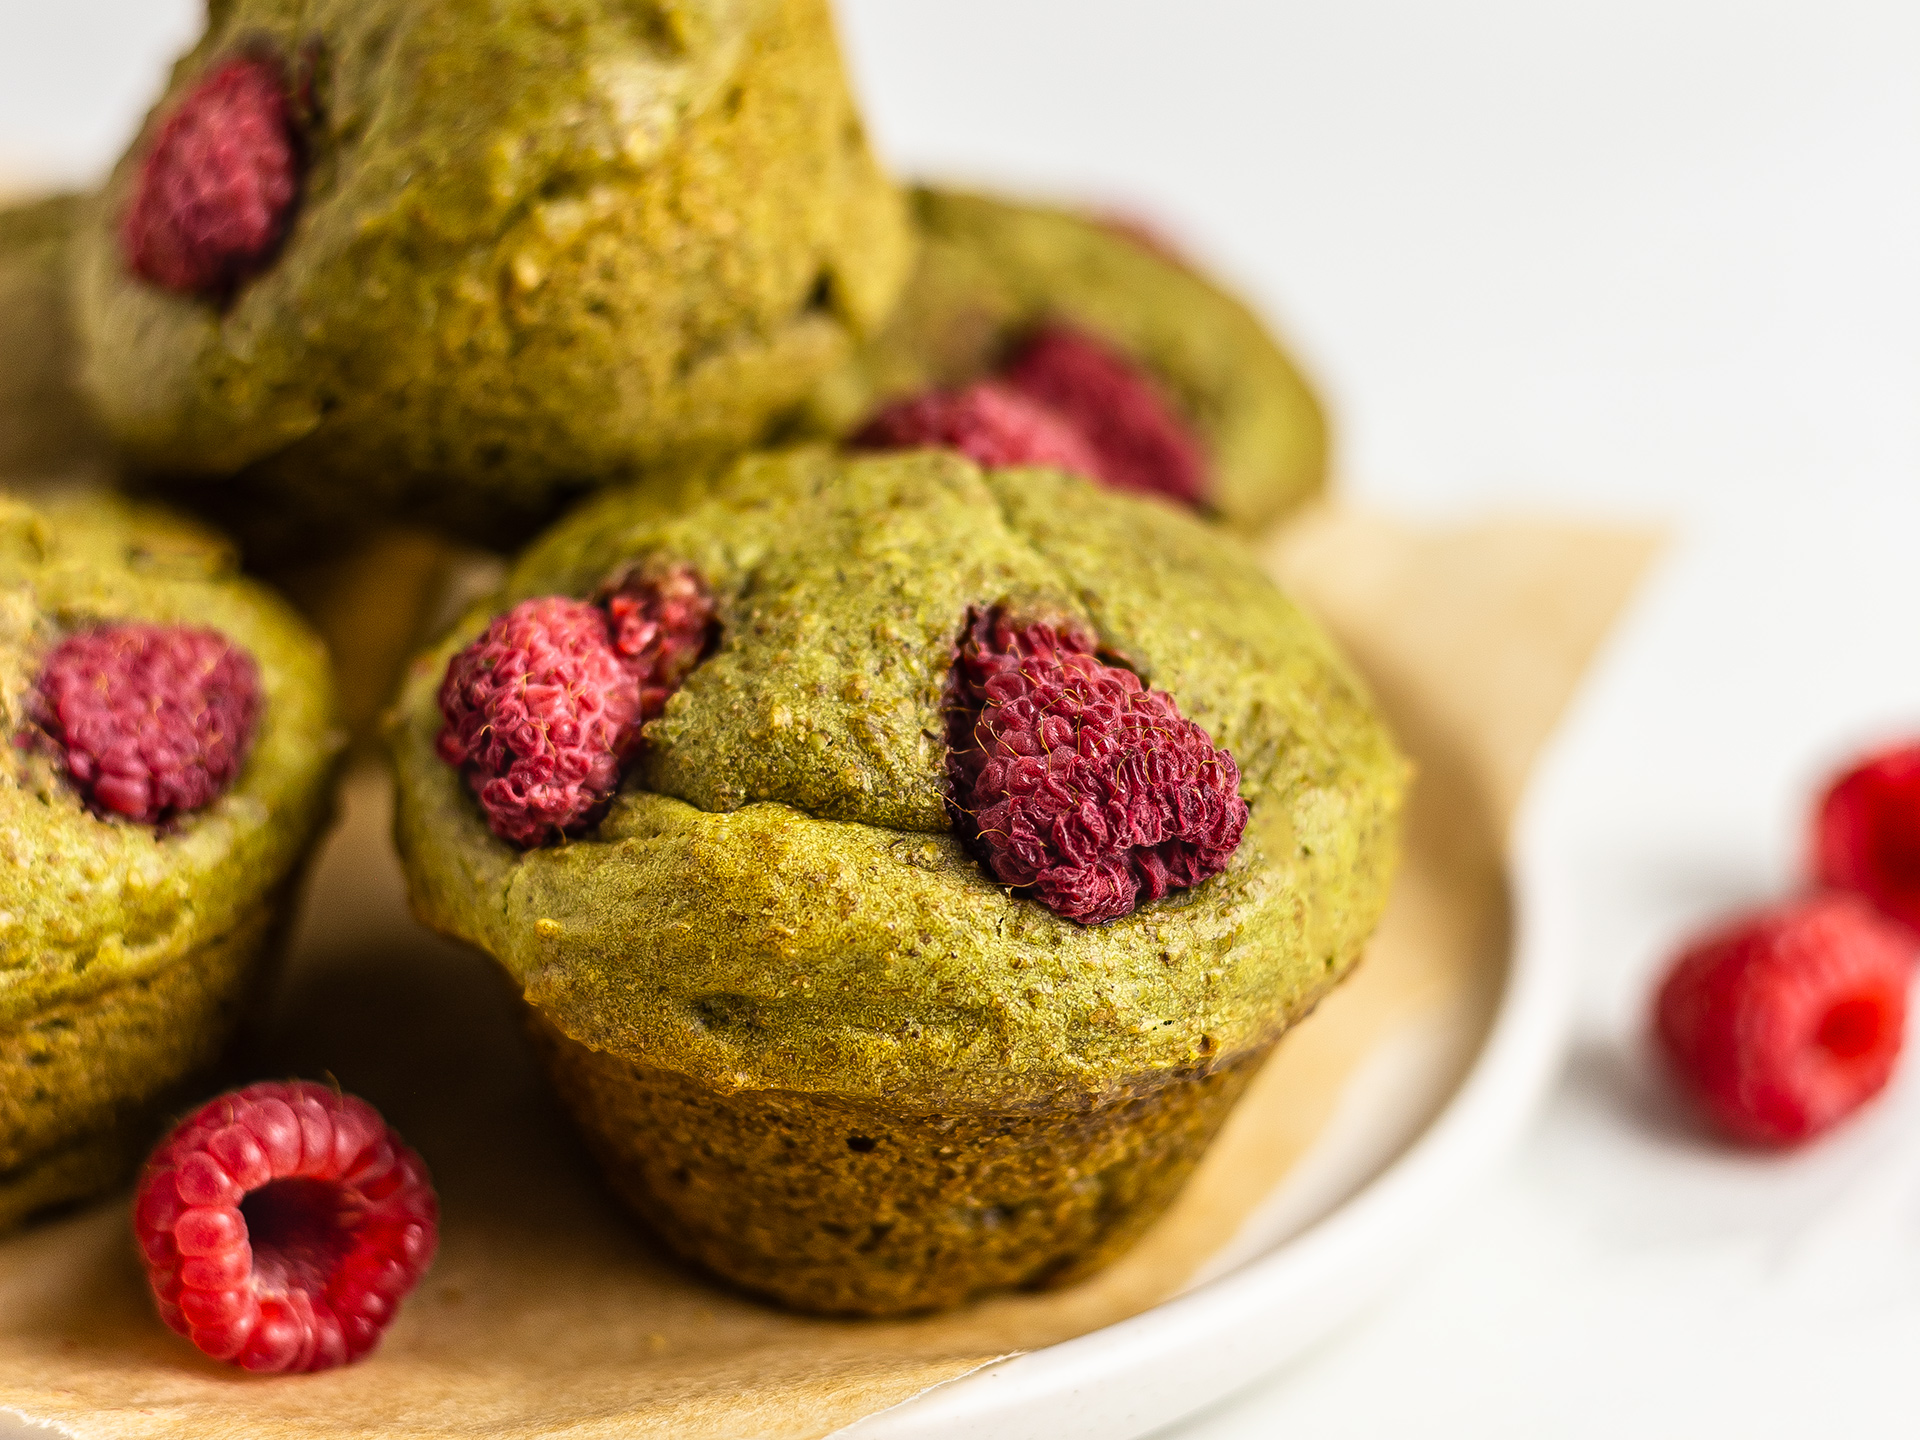 Vegan Matcha Muffins with Raspberries